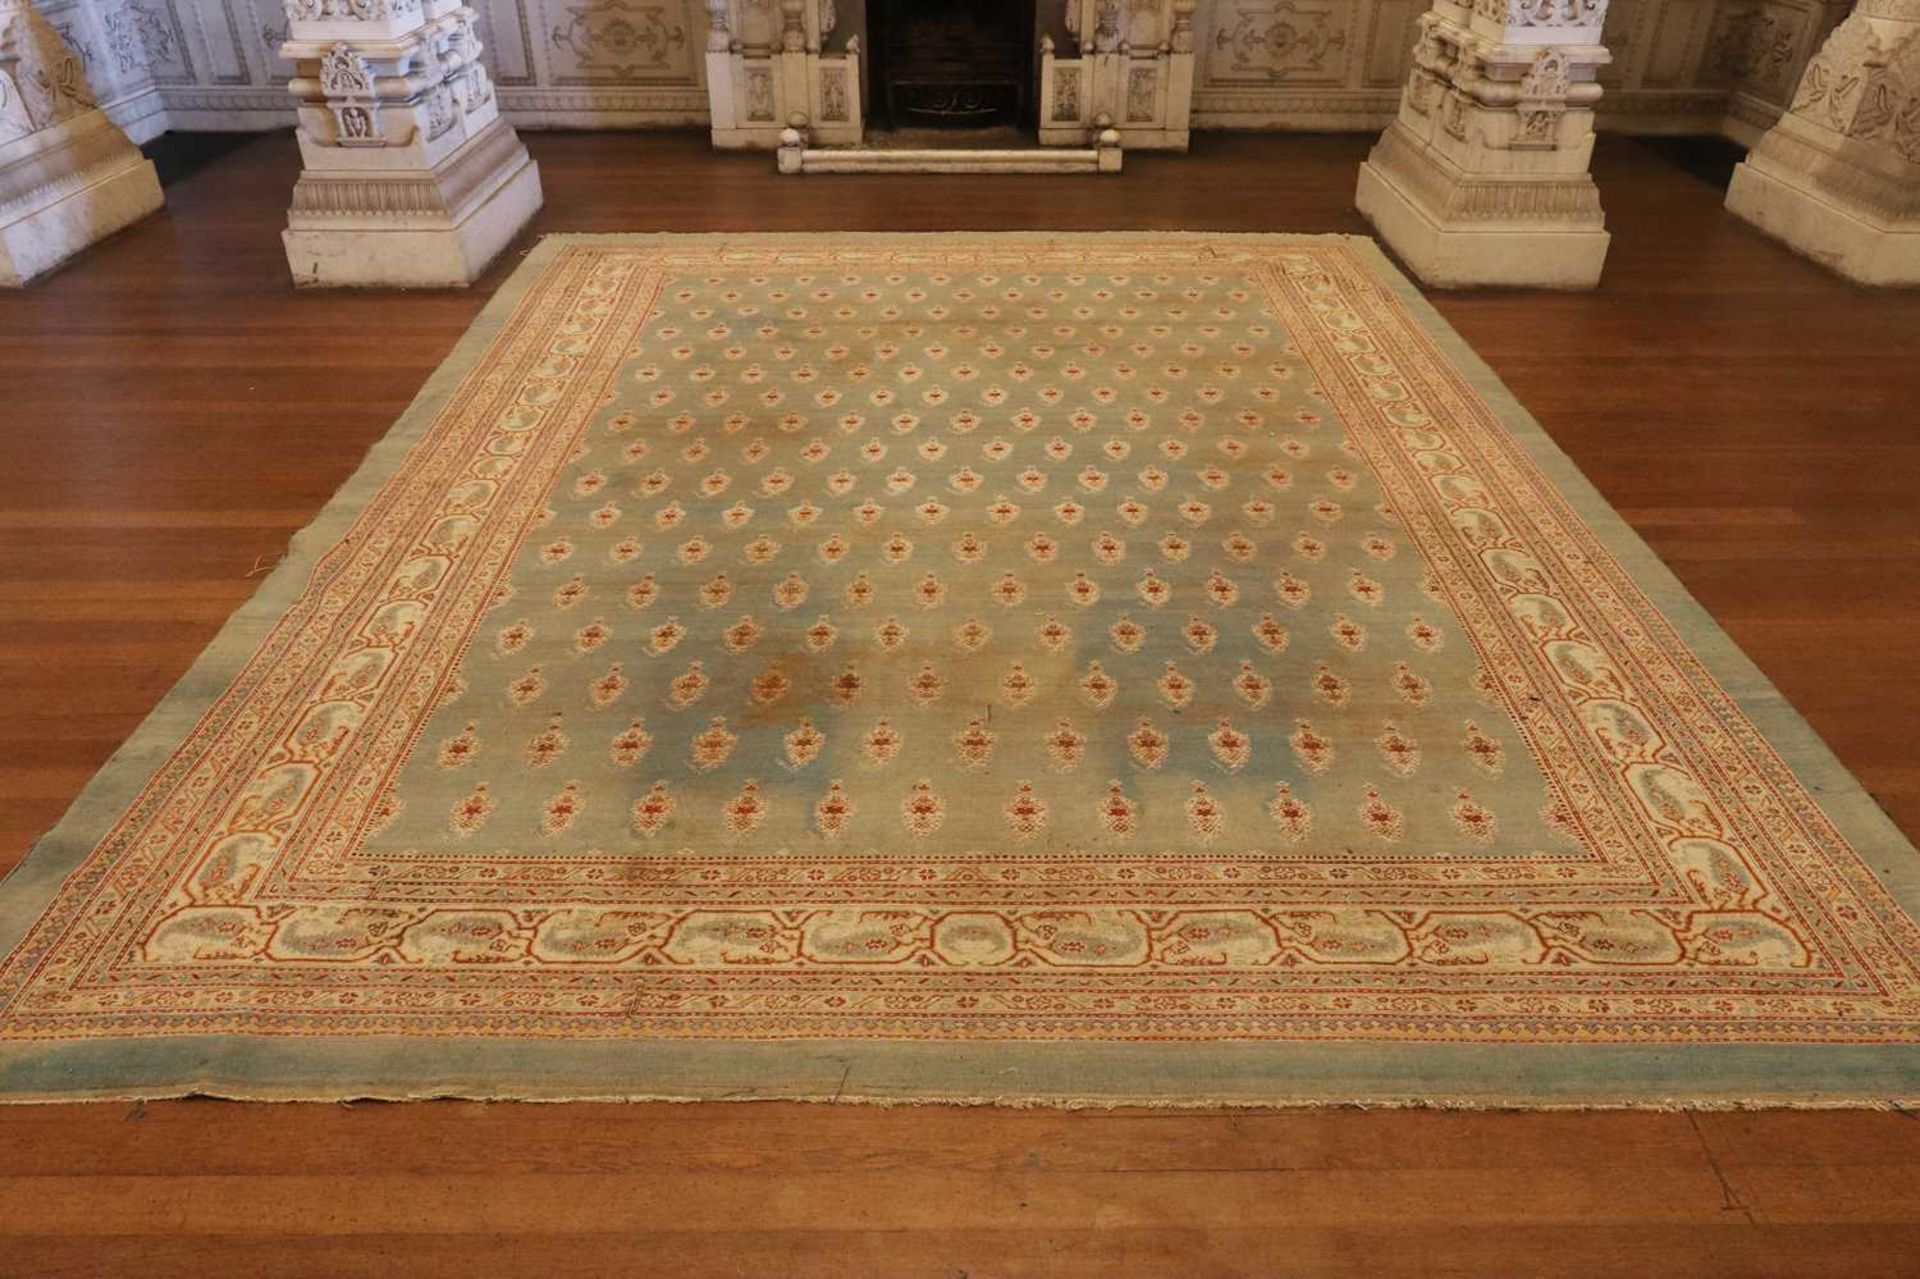 ☘ A large blue Amritsar carpet, - Image 16 of 38